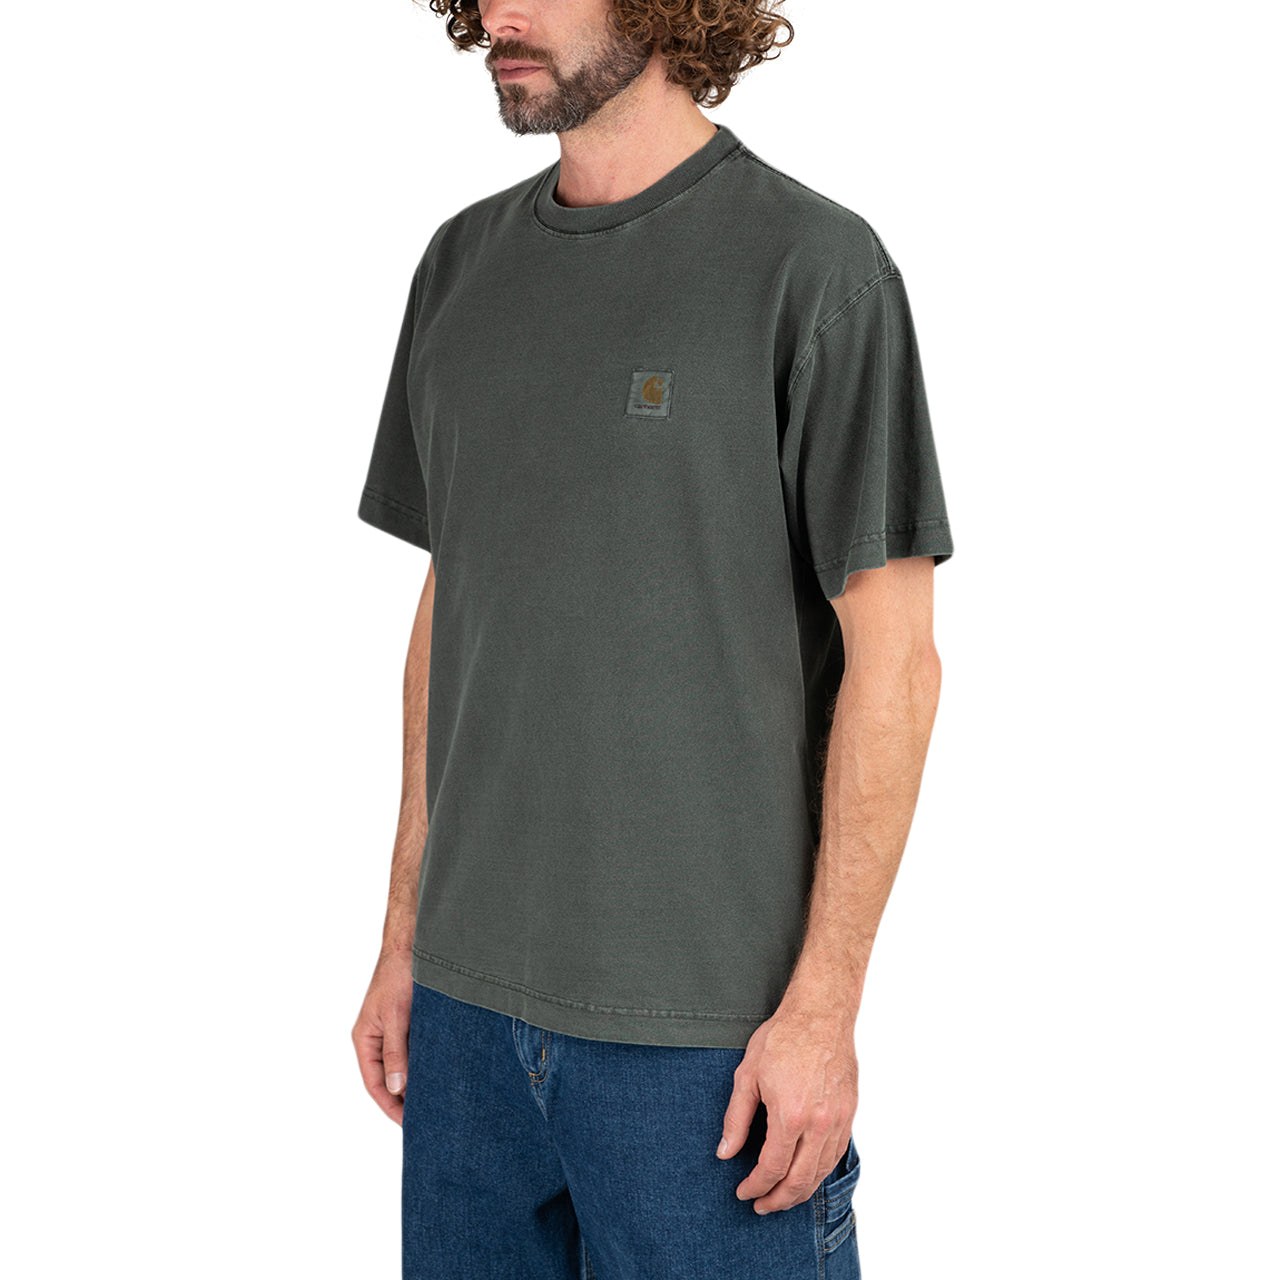 Store (Dunkelgrün) WIP Shortsleeve Vista - Carhartt T-Shirt 1030780 Allike